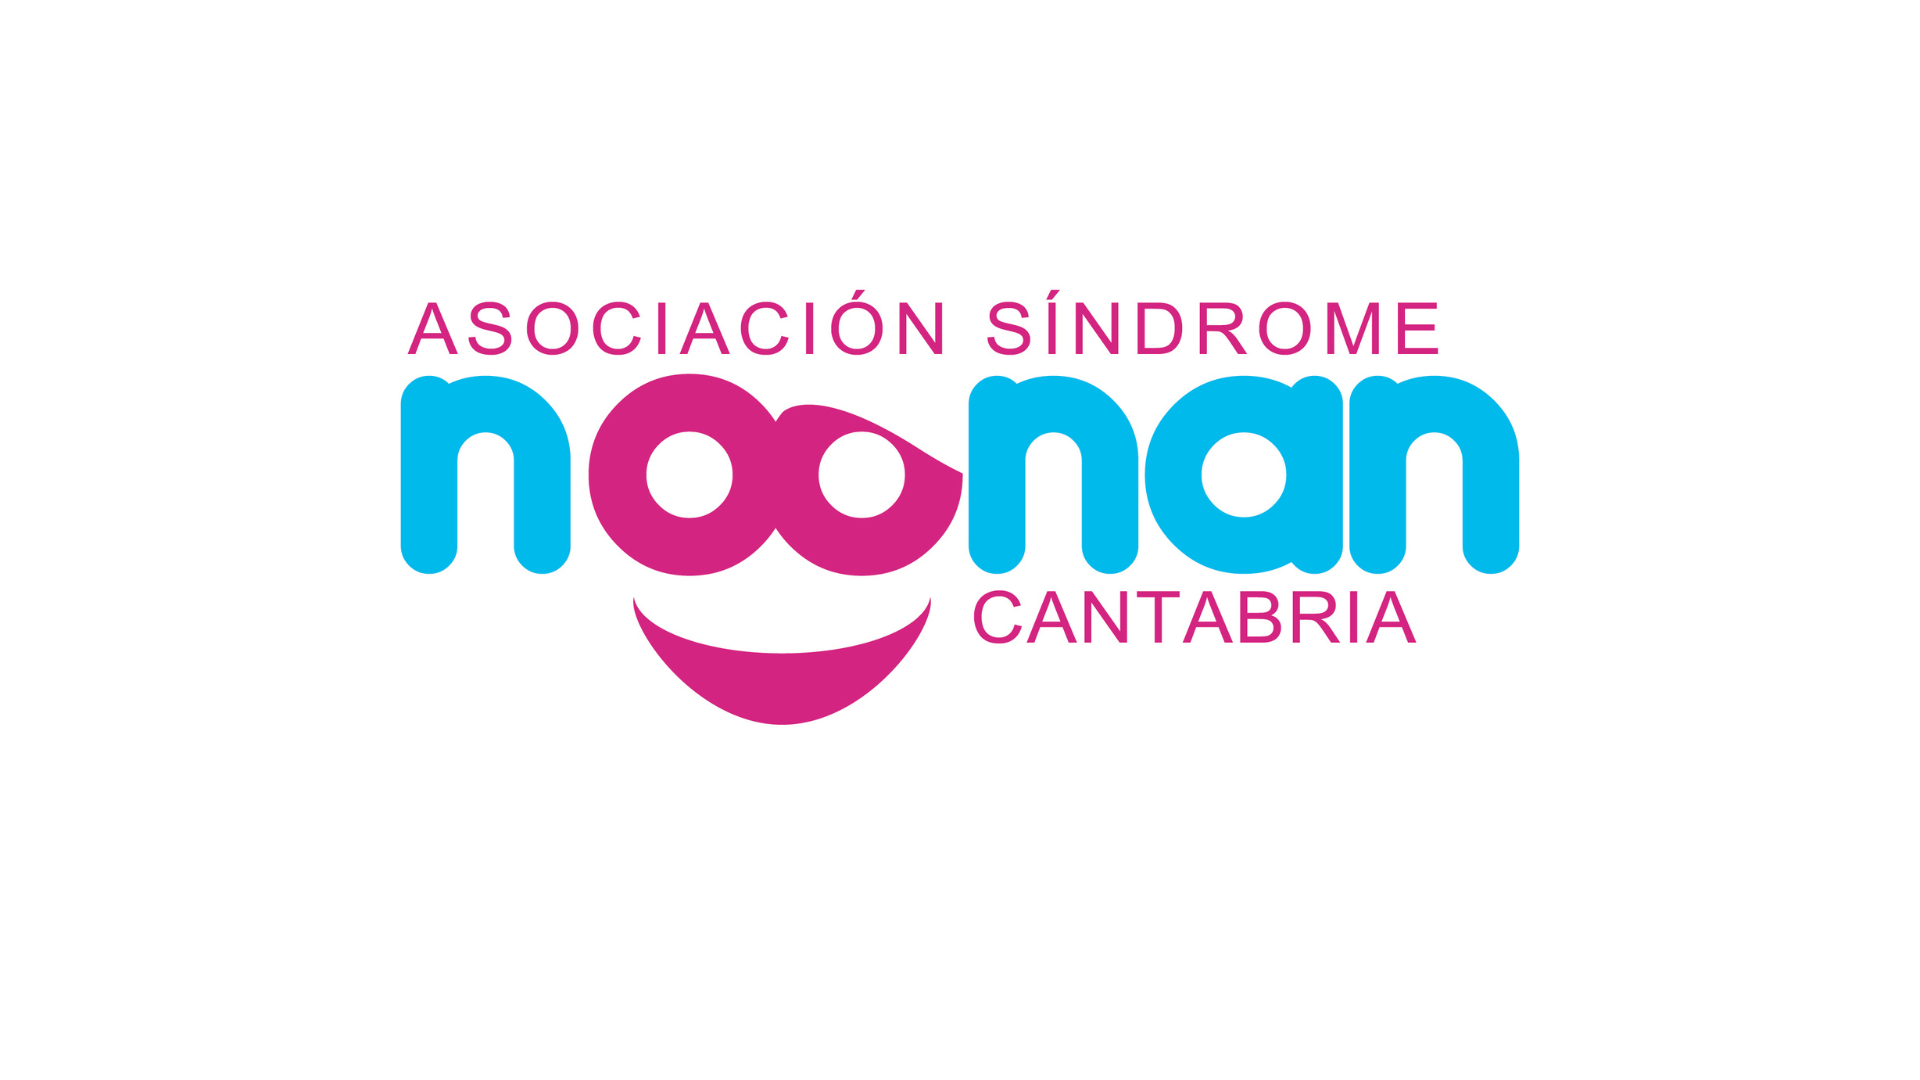 Logotipo Noonan Cantabria